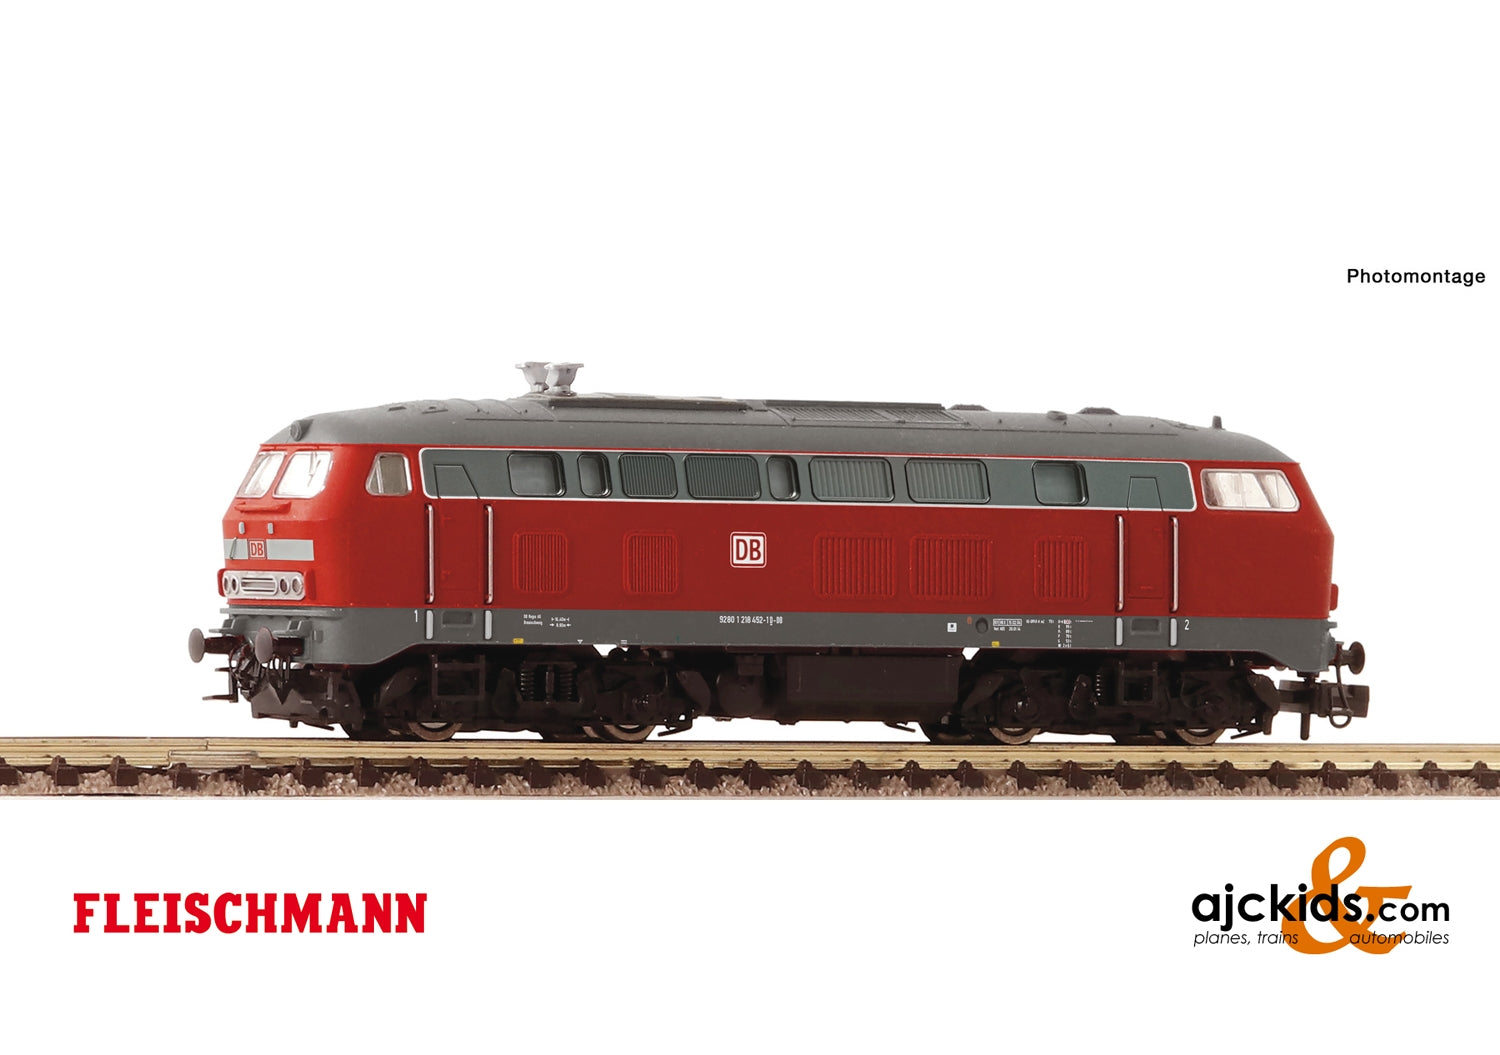 Fleischmann 724218 - Diesel locomotive class 218